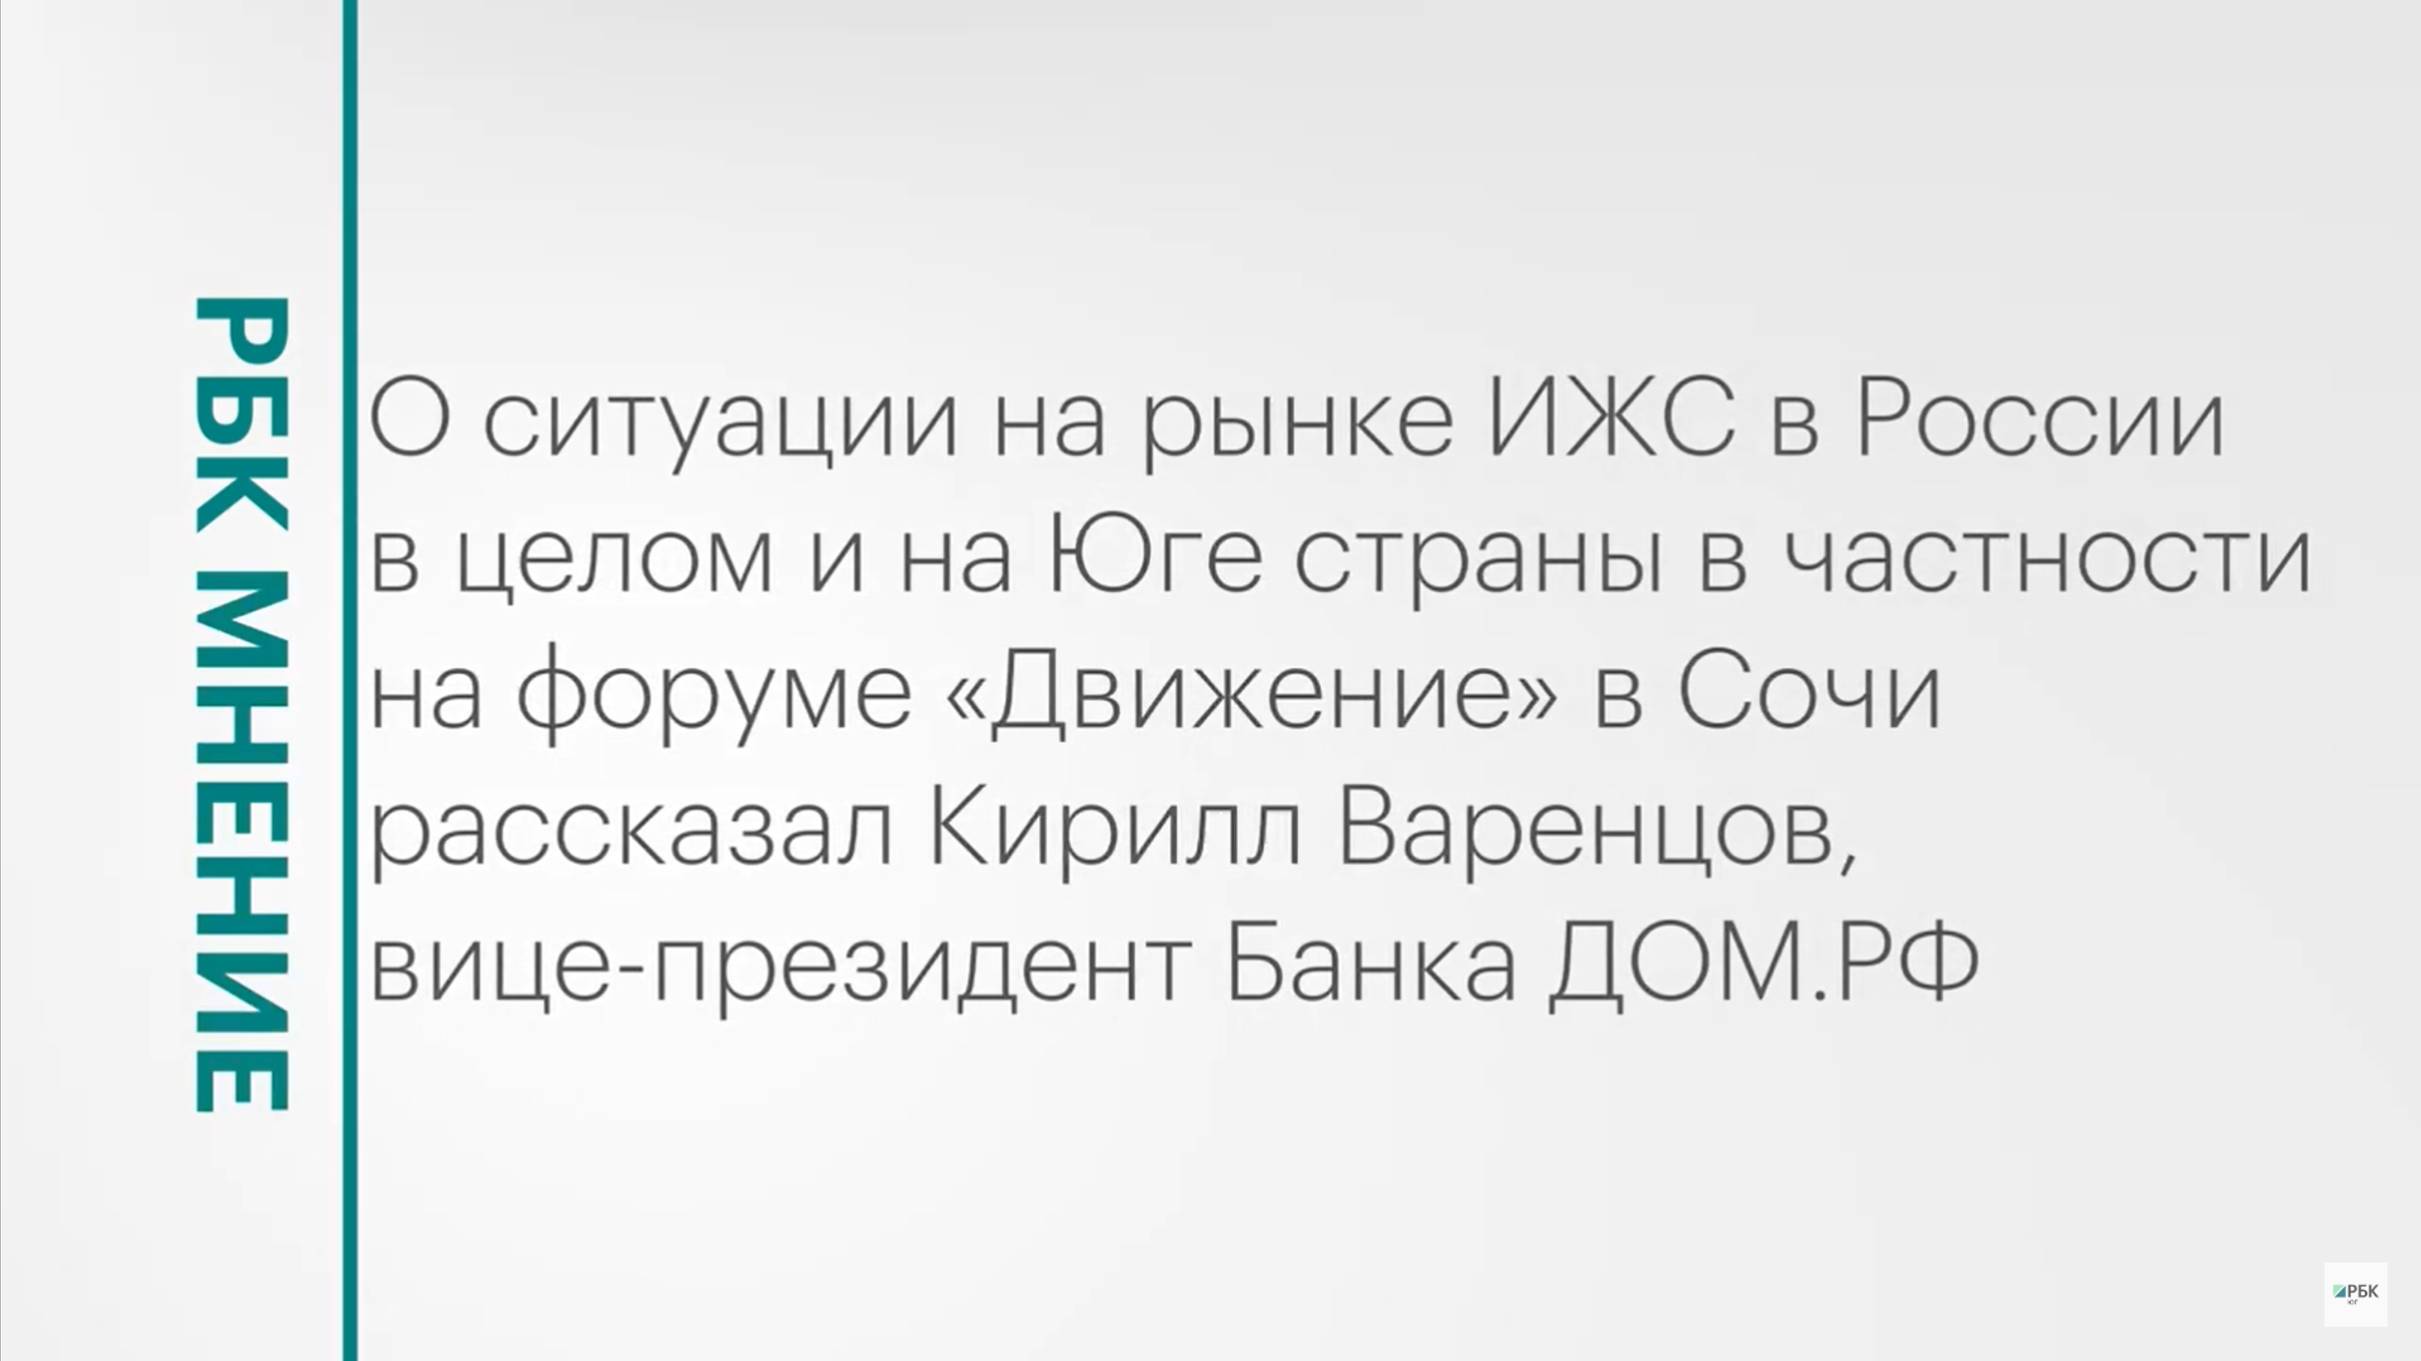 Состояние рынка ИЖС на Юге России и в целом по стране || РБК Мнение